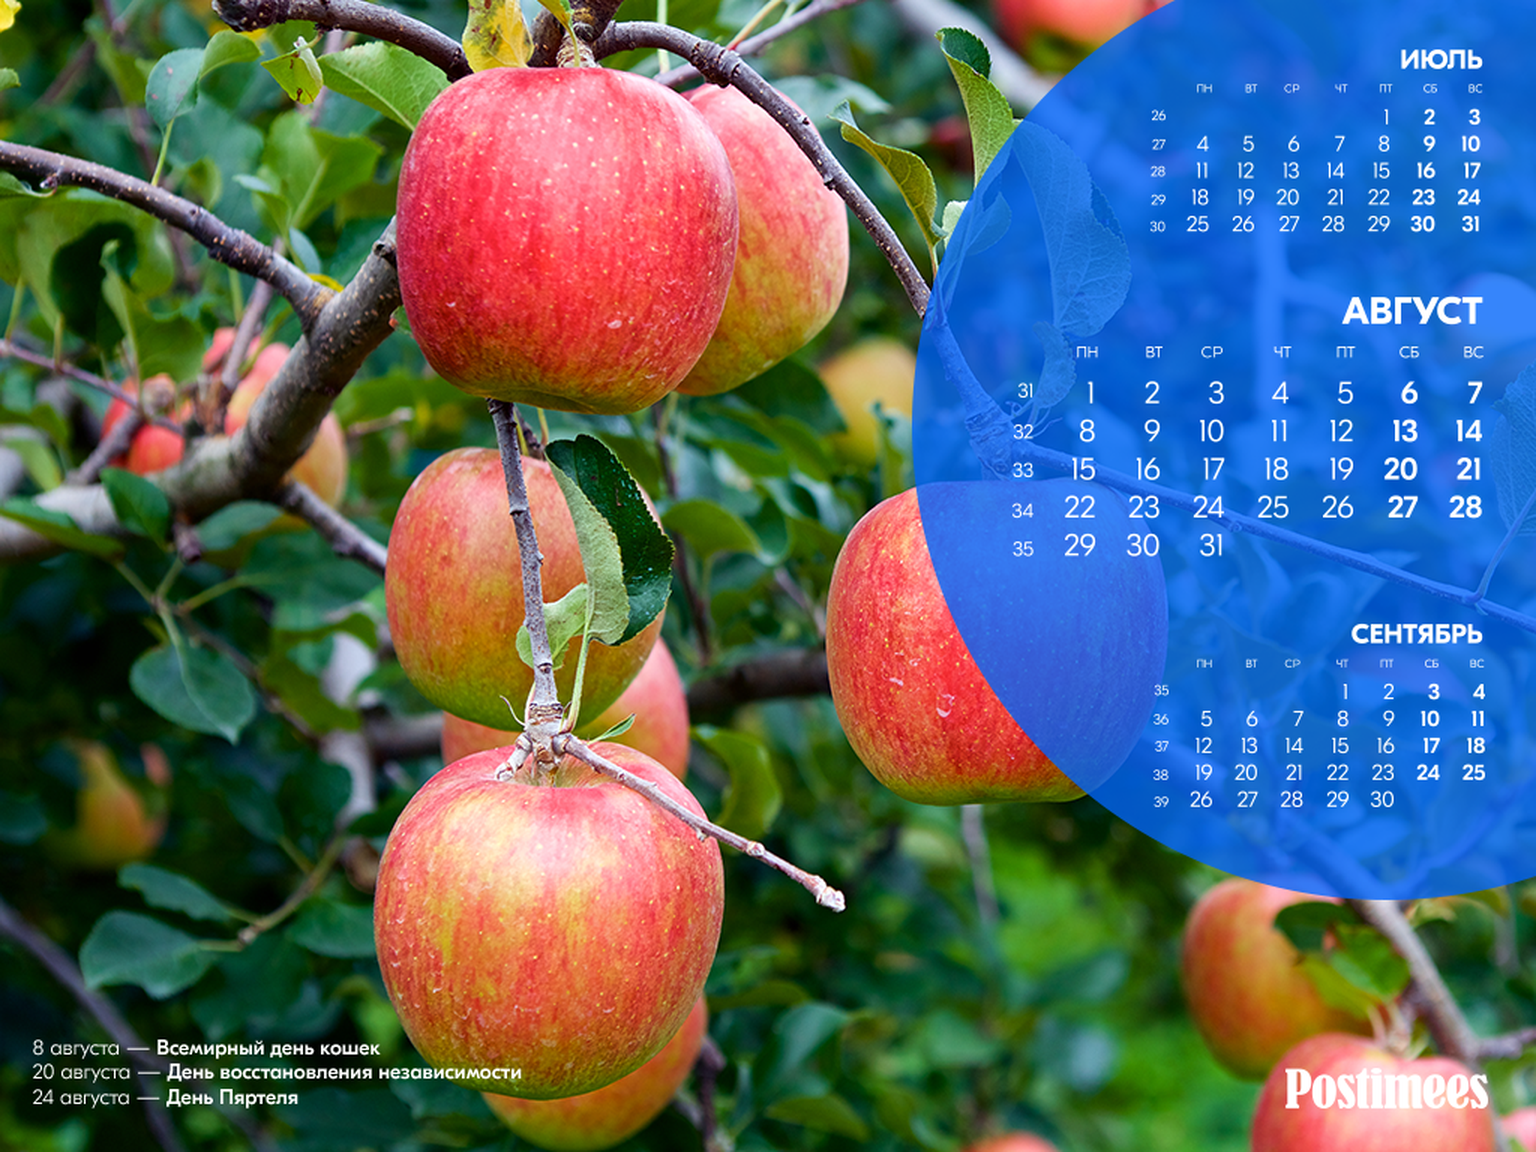 Обои-календарь на август (1024*768).